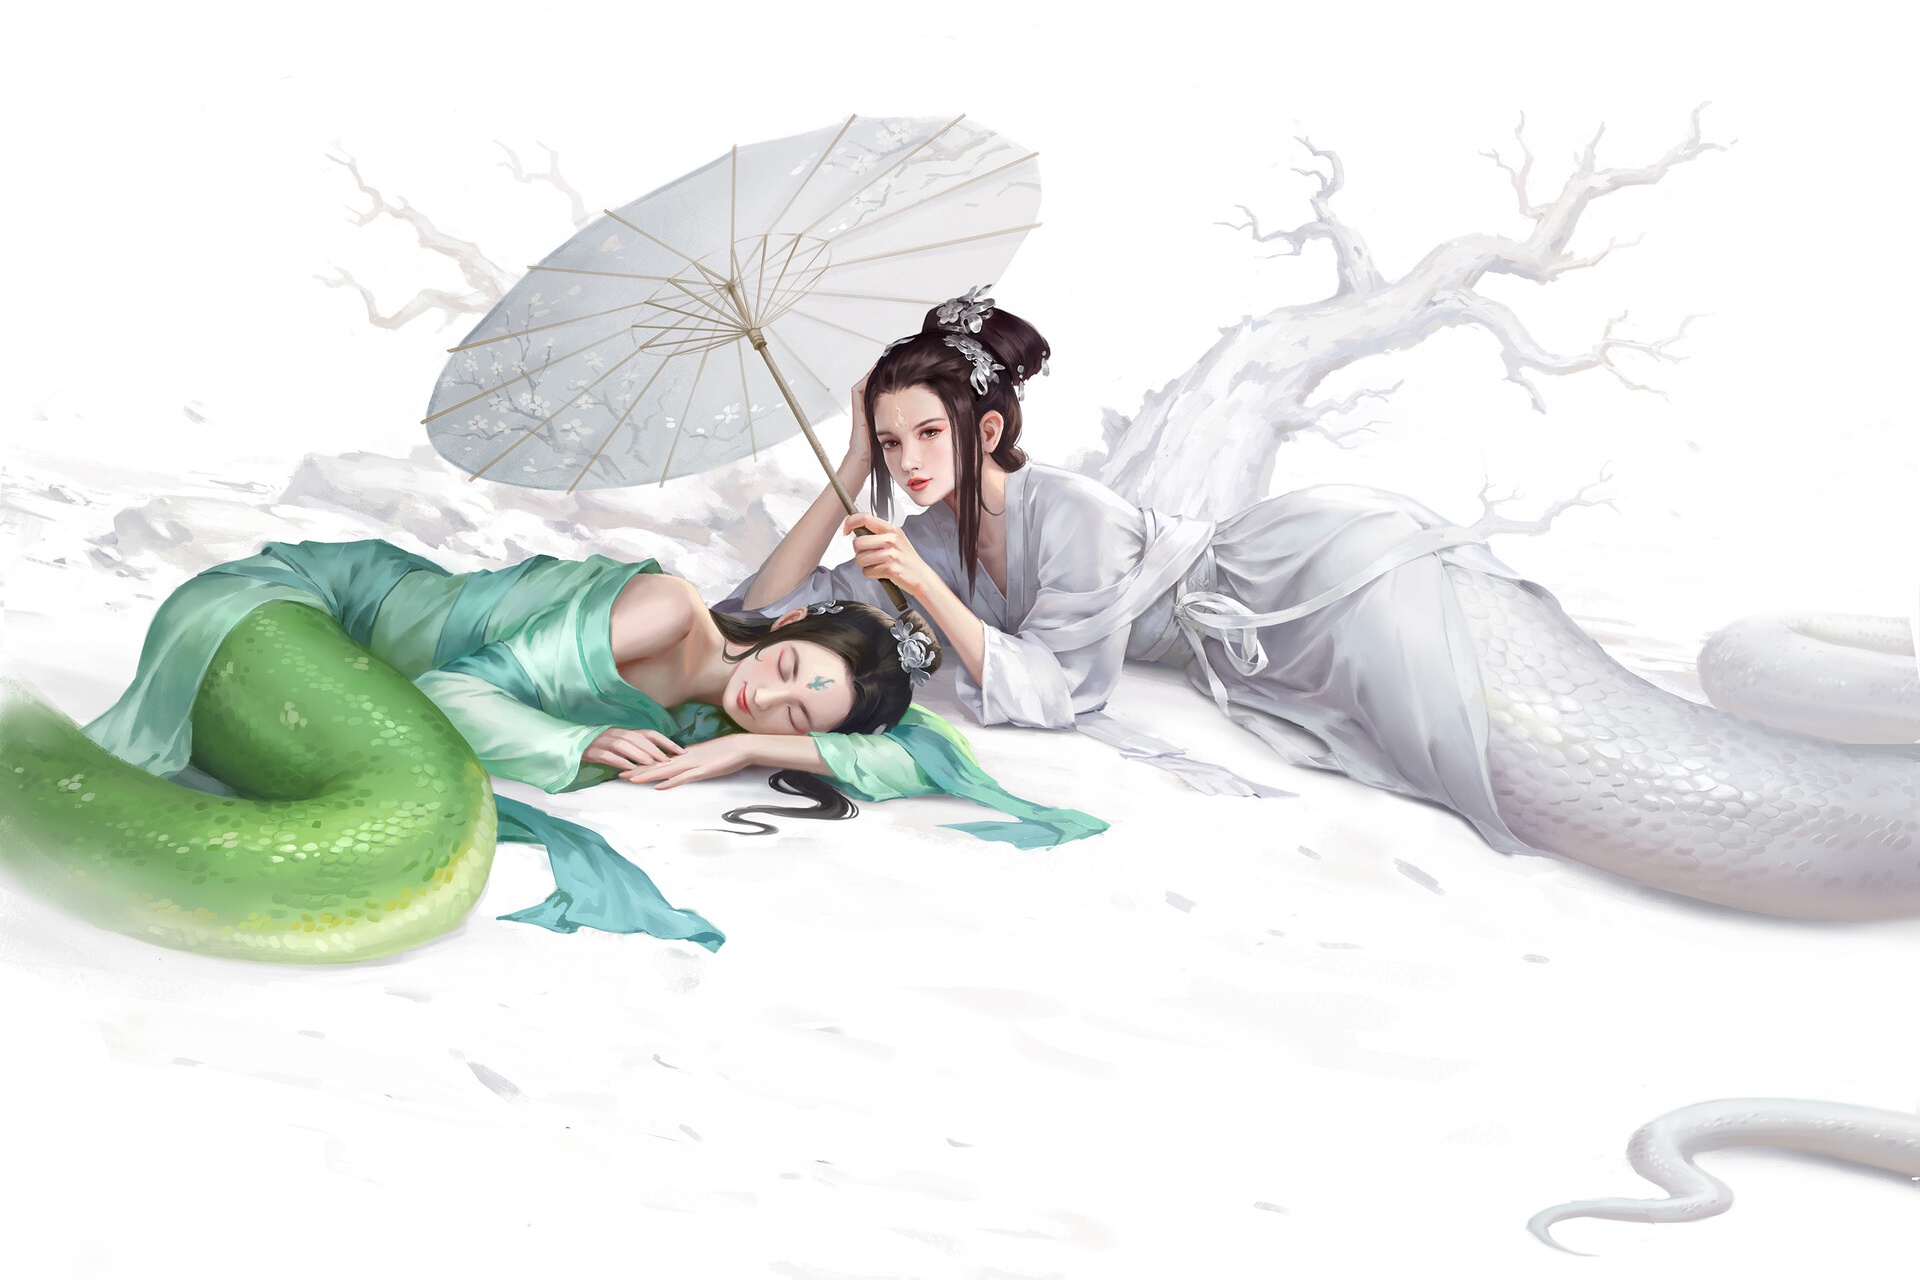 General 1920x1280 Asian fantasy art creature umbrella fantasy girl Lamia Lady white snake Madame White Snake Legend of the White Snake